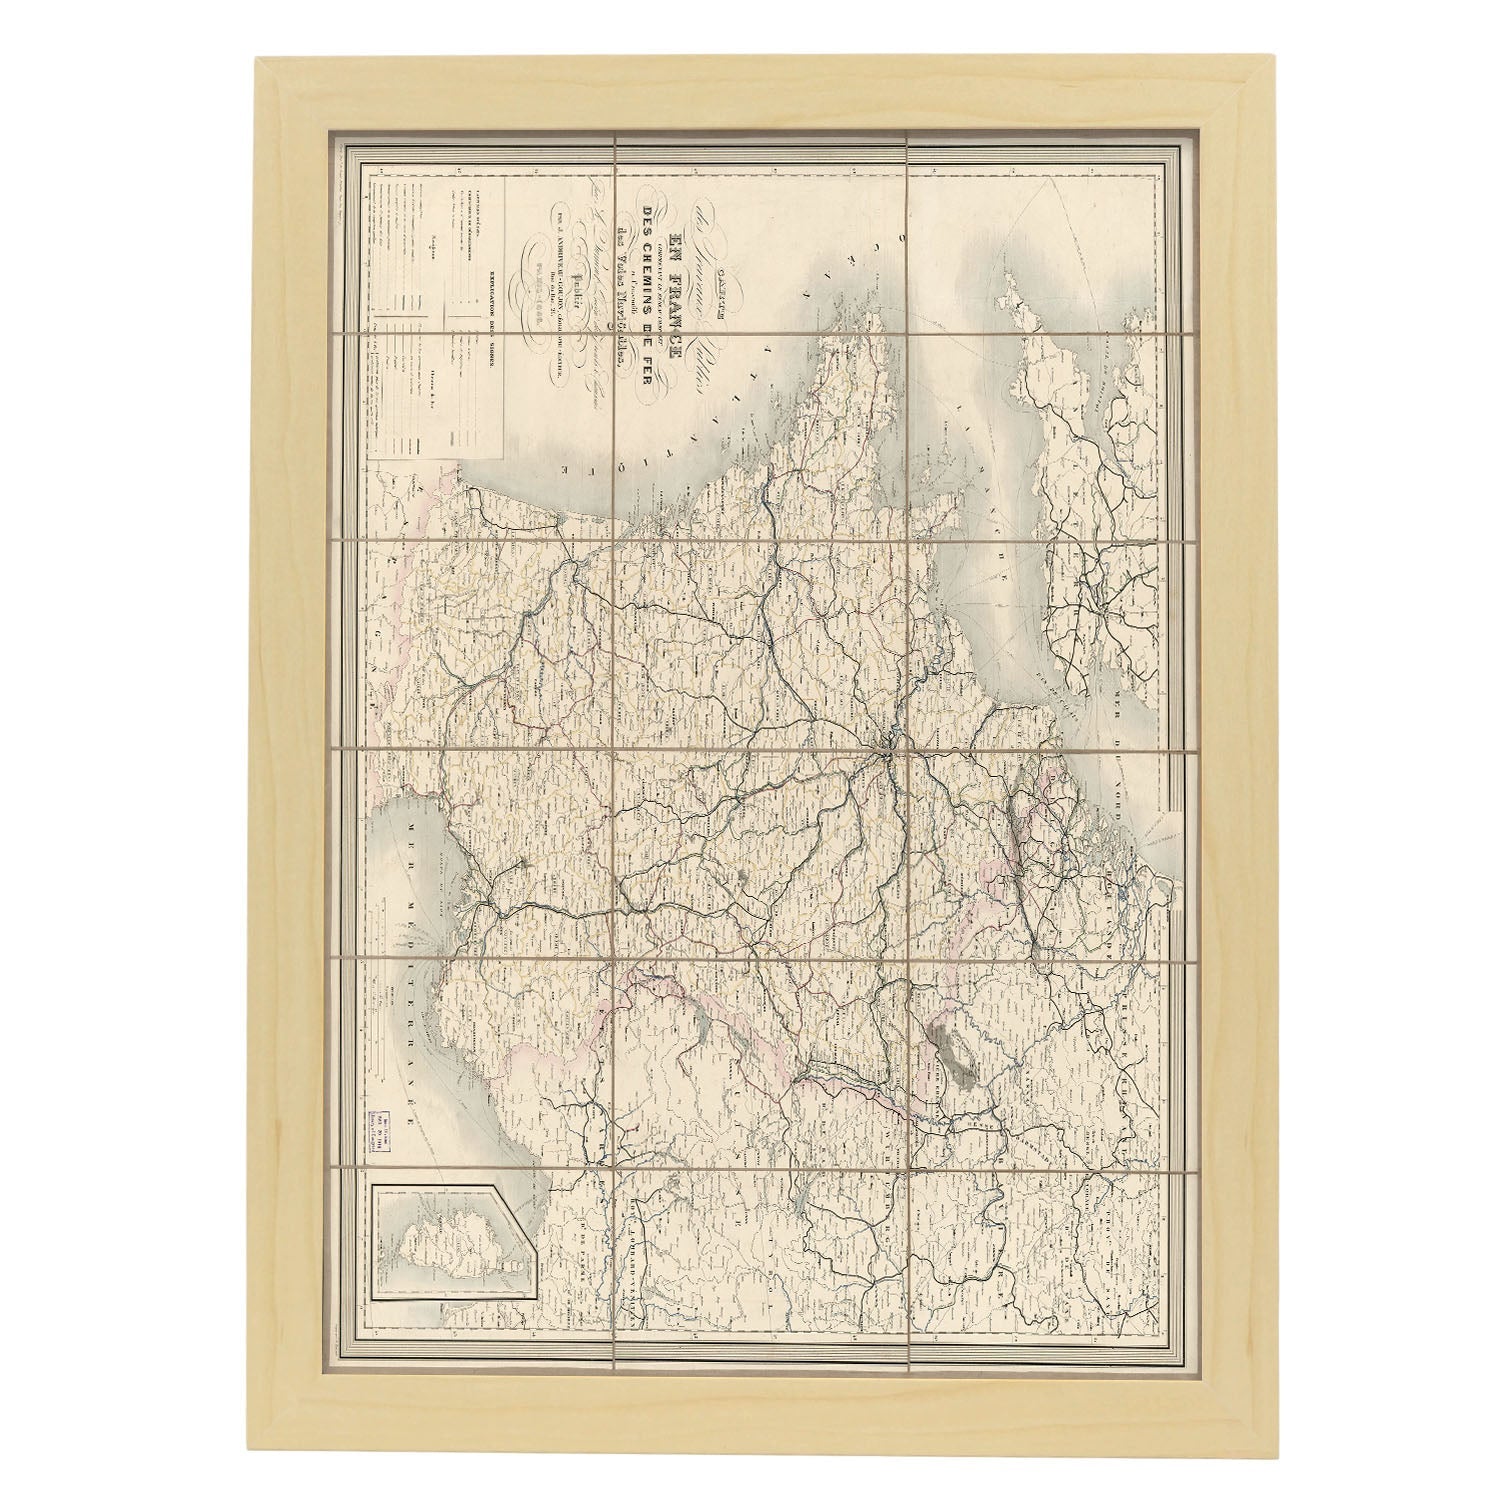 Carte des travaux publics en France 1865-Artwork-Nacnic-A3-Marco Madera clara-Nacnic Estudio SL